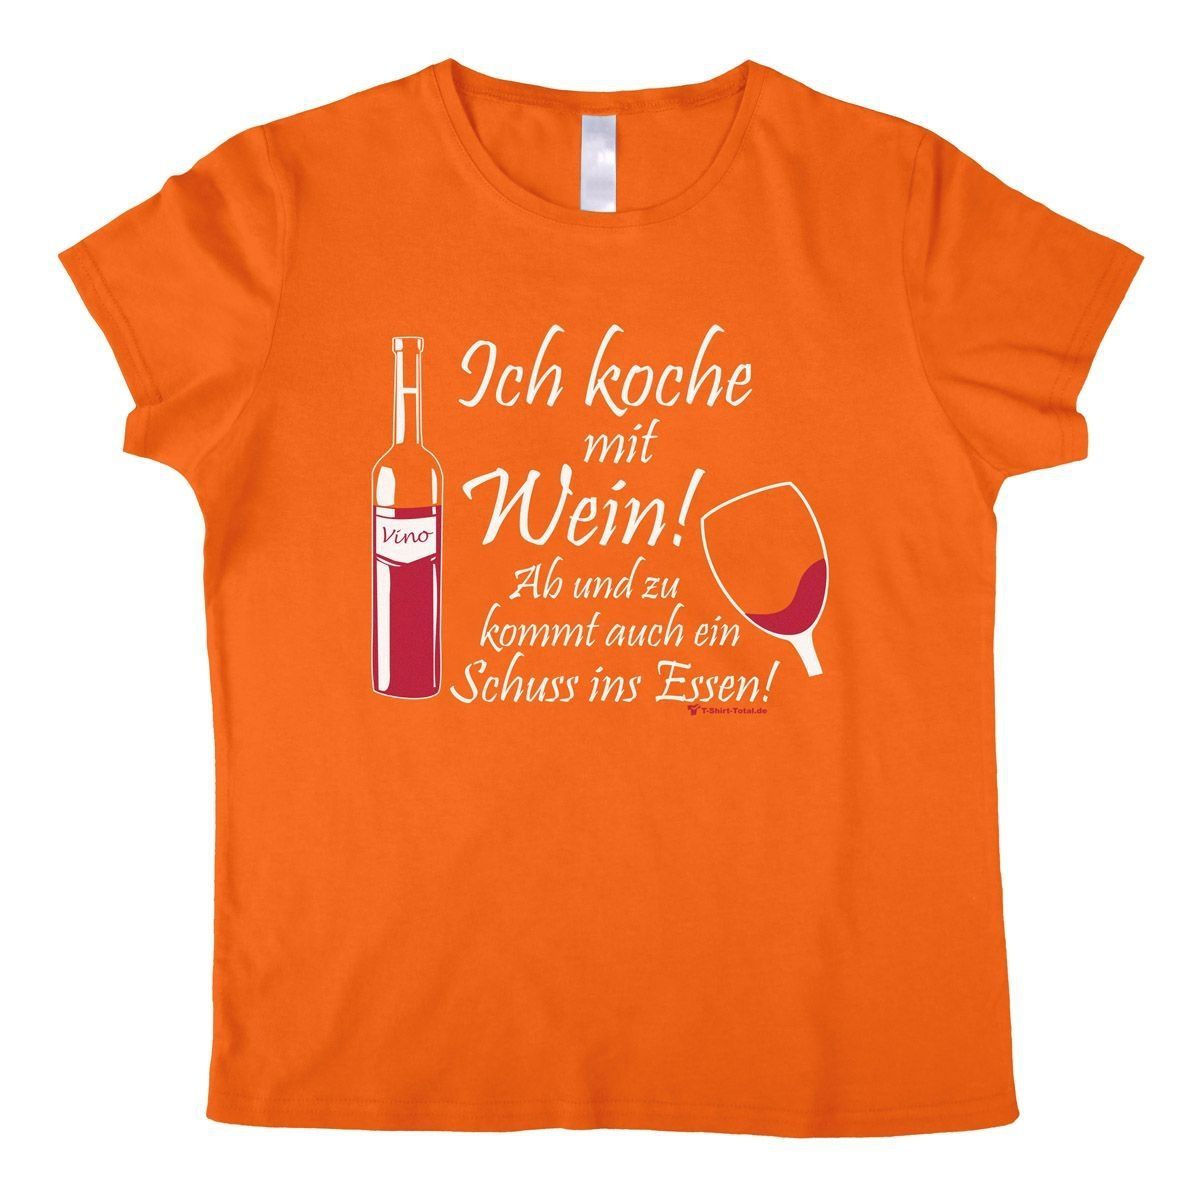 Koche mit Wein Woman T-Shirt orange Large